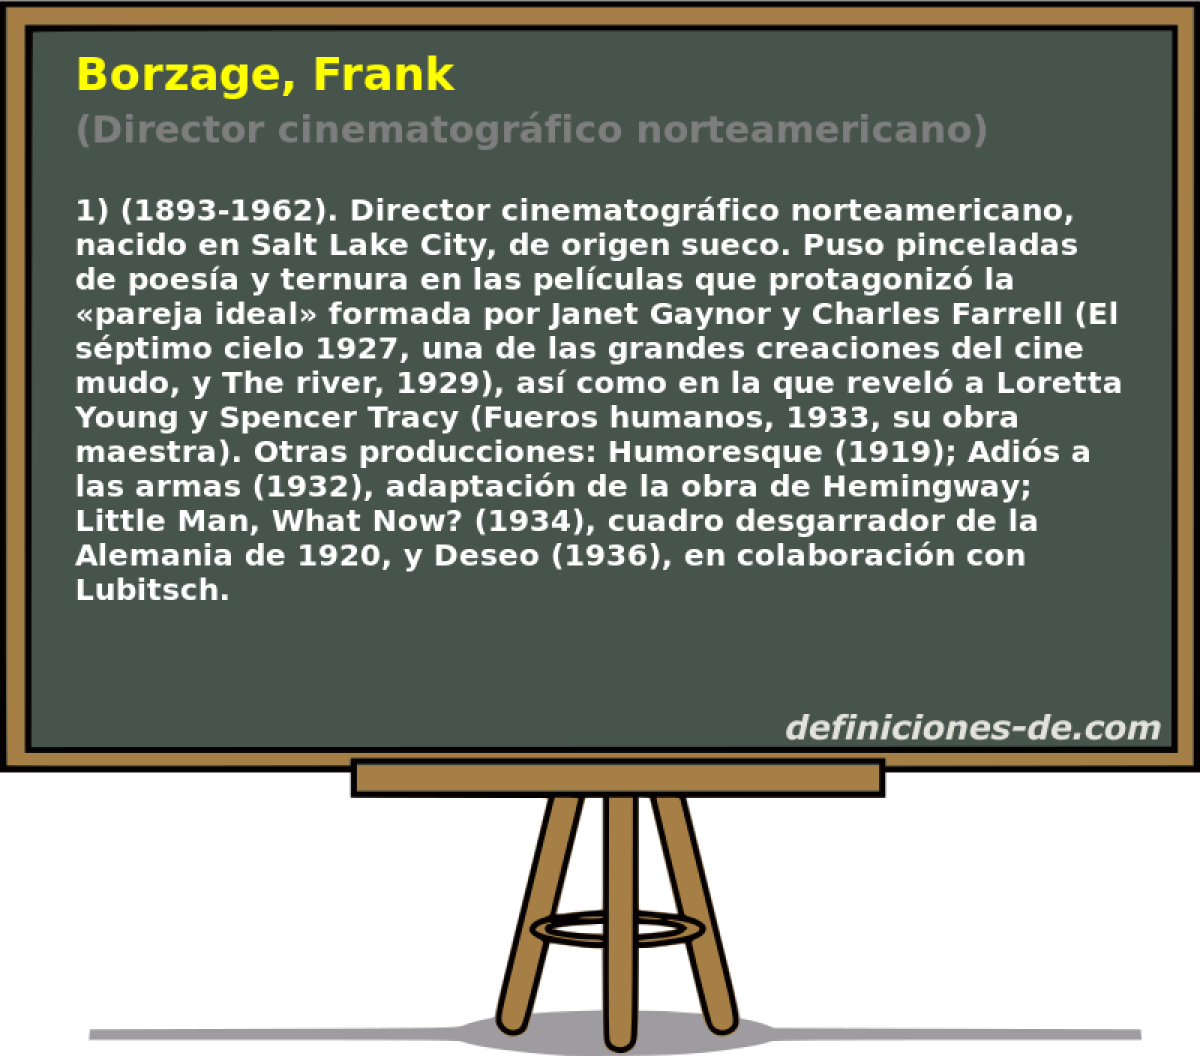 Borzage, Frank (Director cinematogrfico norteamericano)